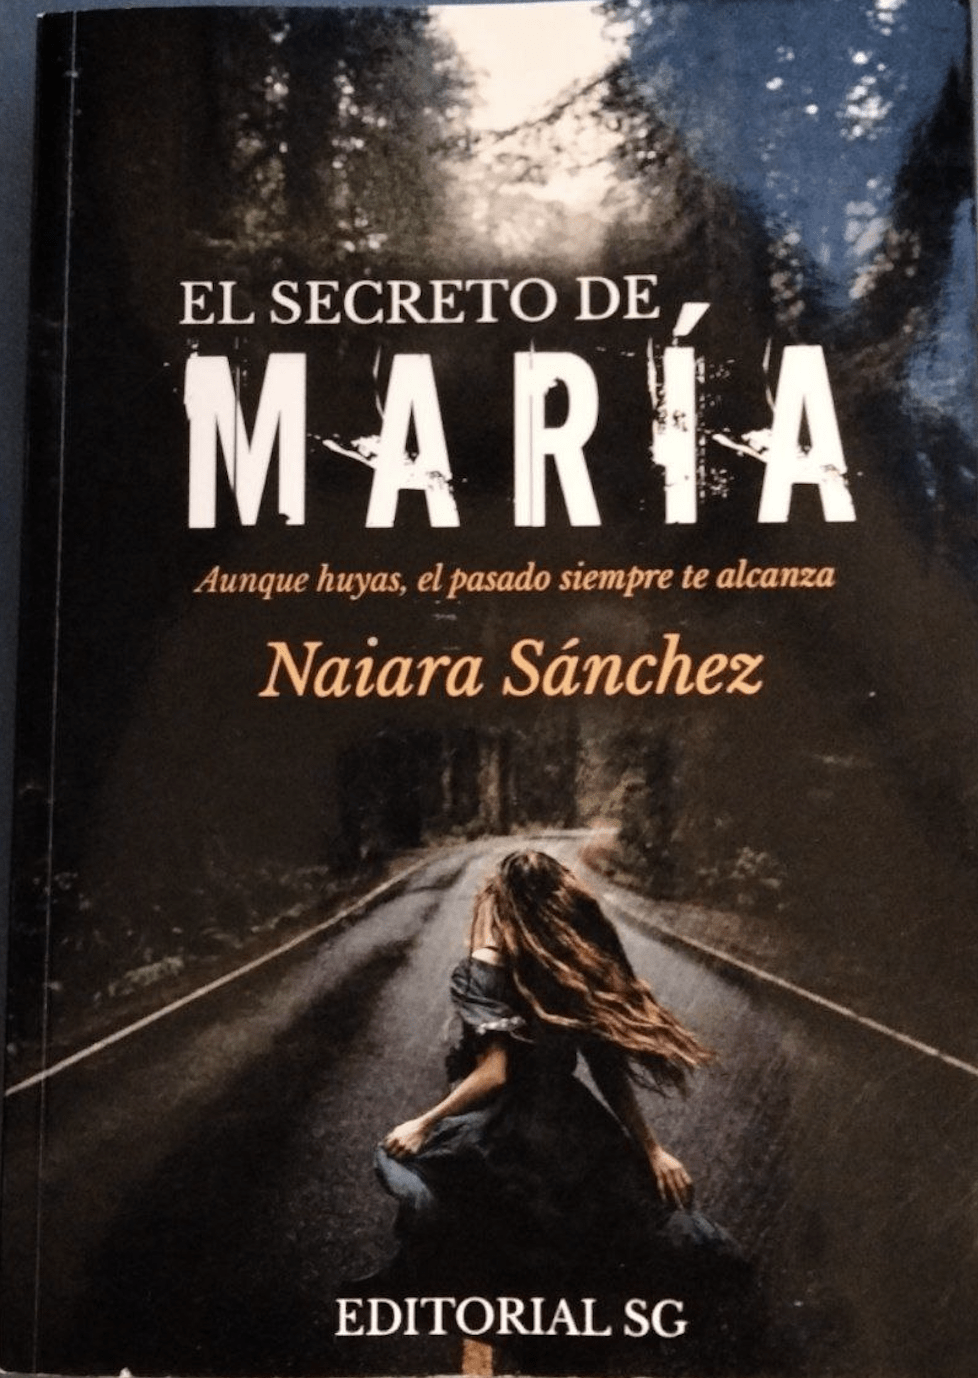 Imagen-libro-El-secreto-de-María-de-Naiara-Sánchez